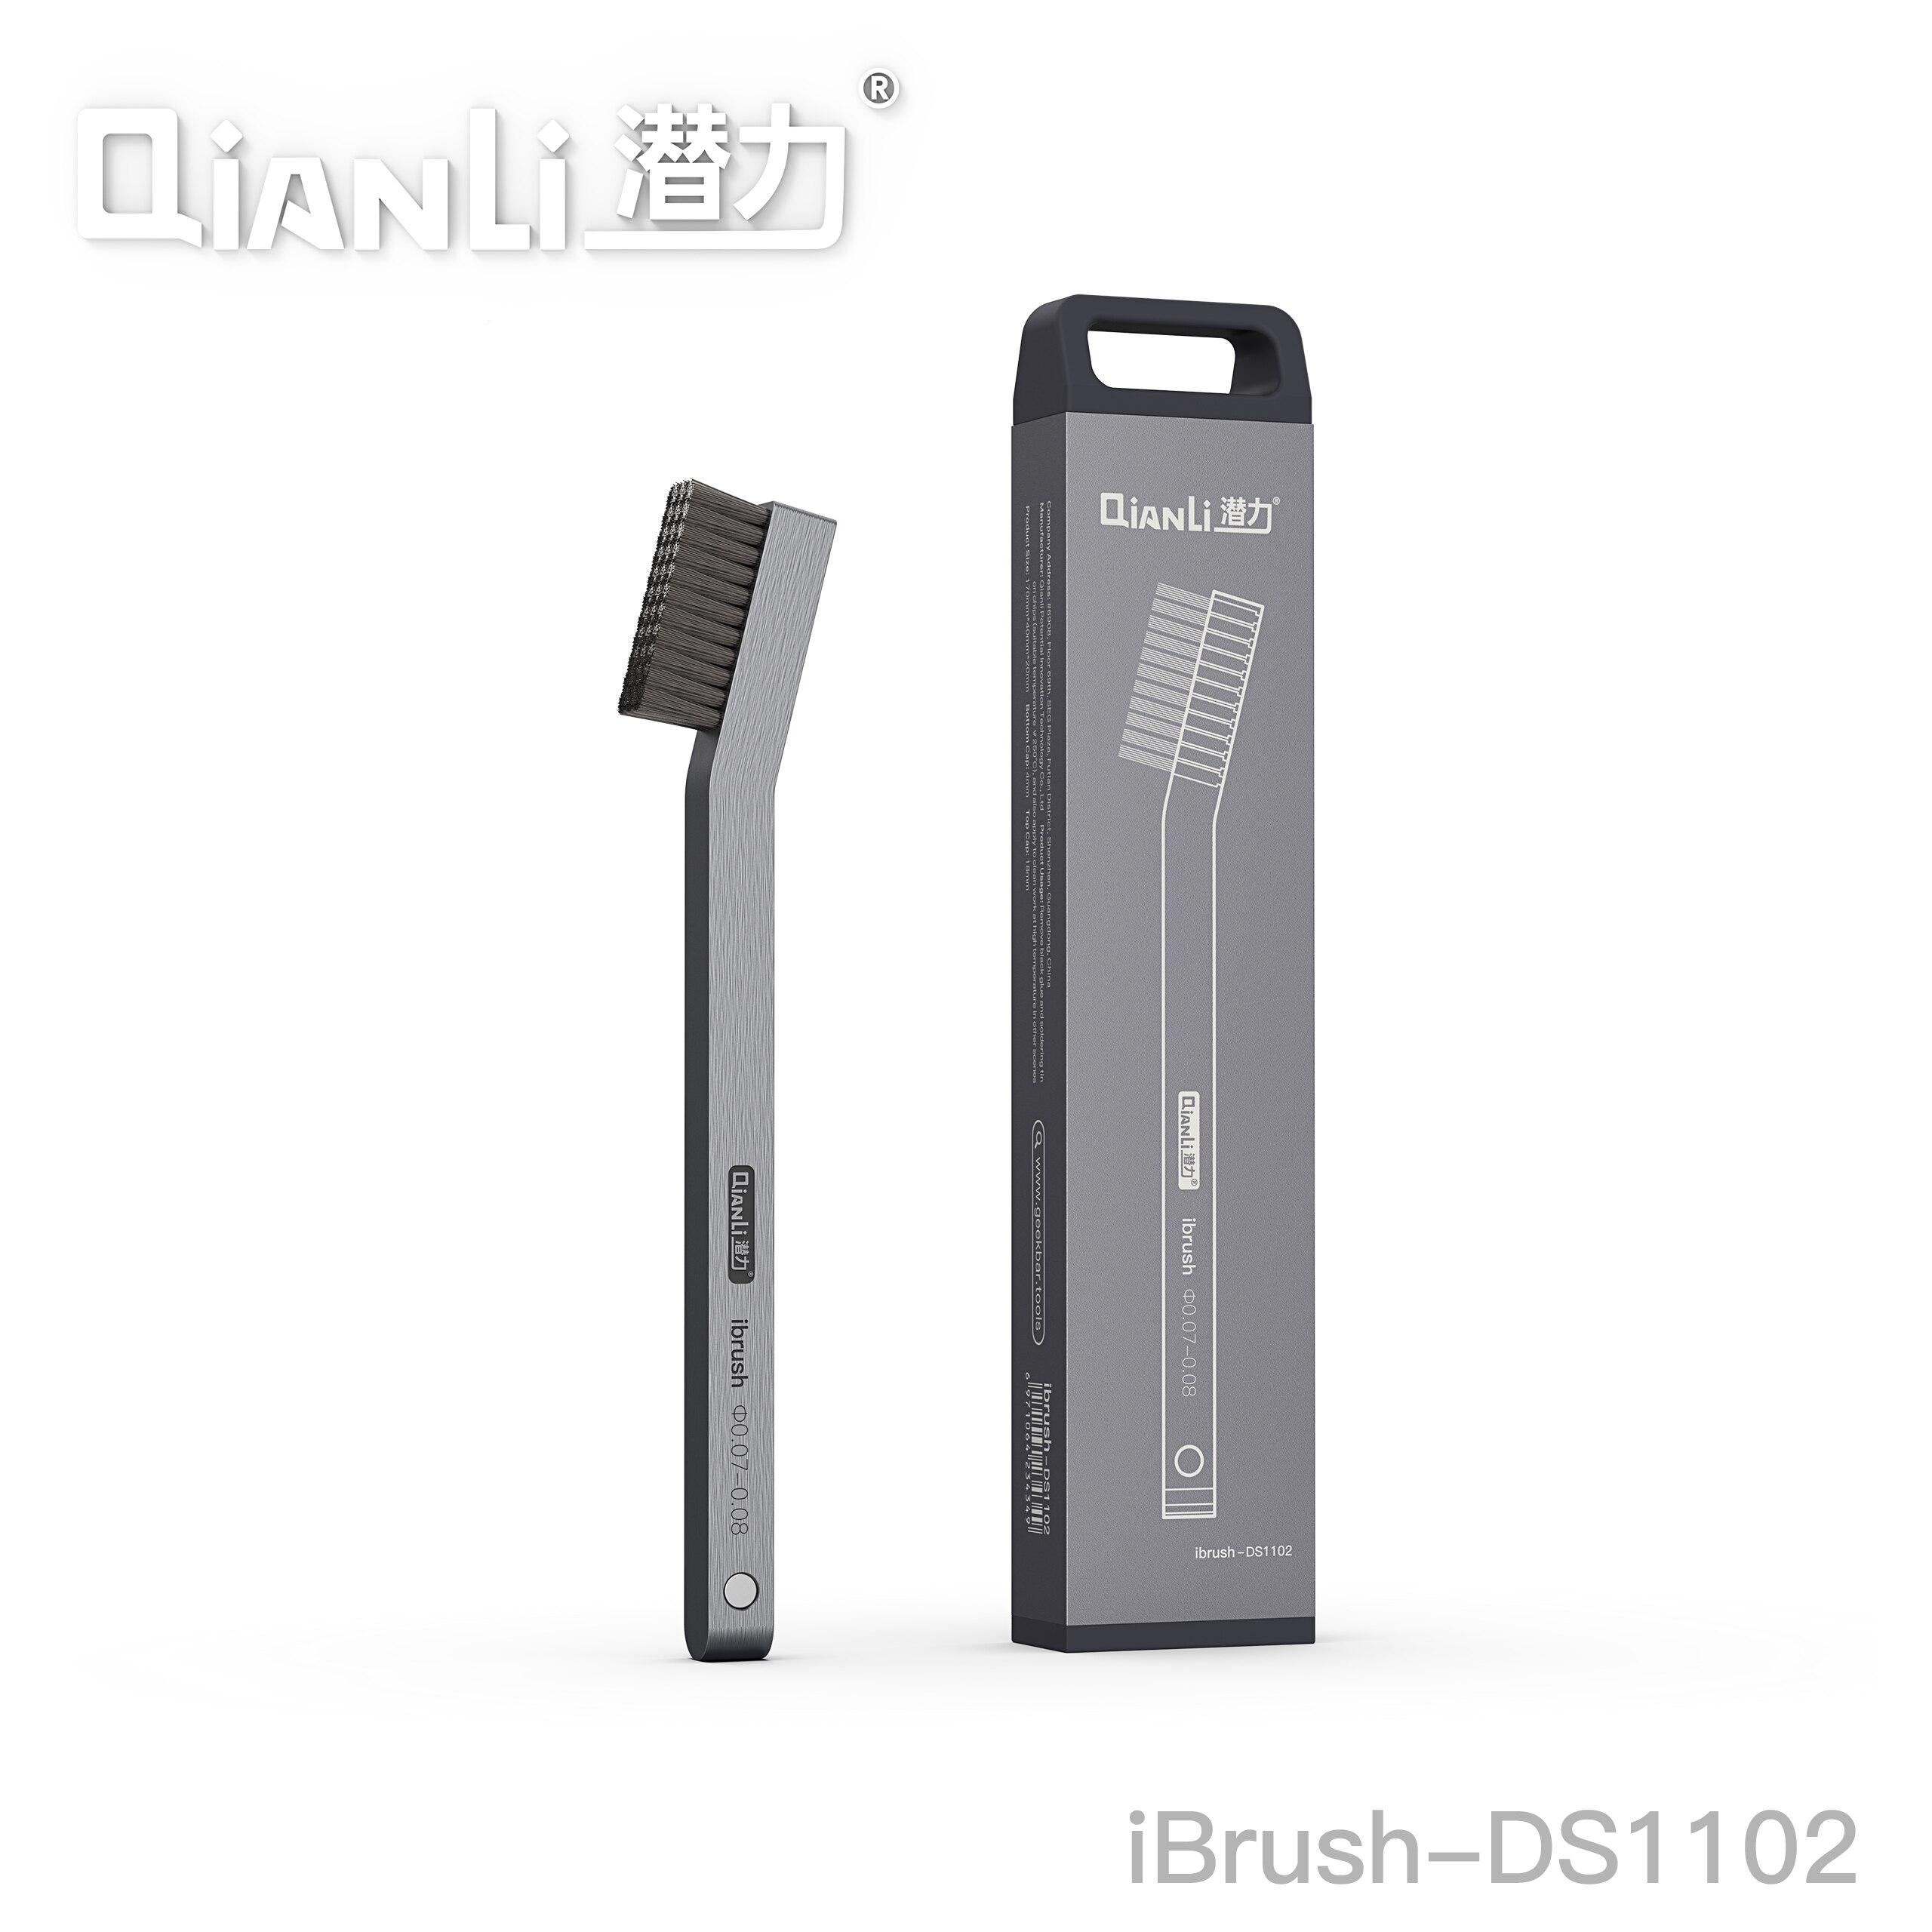 Qianli iBrush DS1102 Multifunctionele Stalen Borstel Aluminium Handvat met Magnetiseur Functie Zilver Grijs Geborsteld Textuur